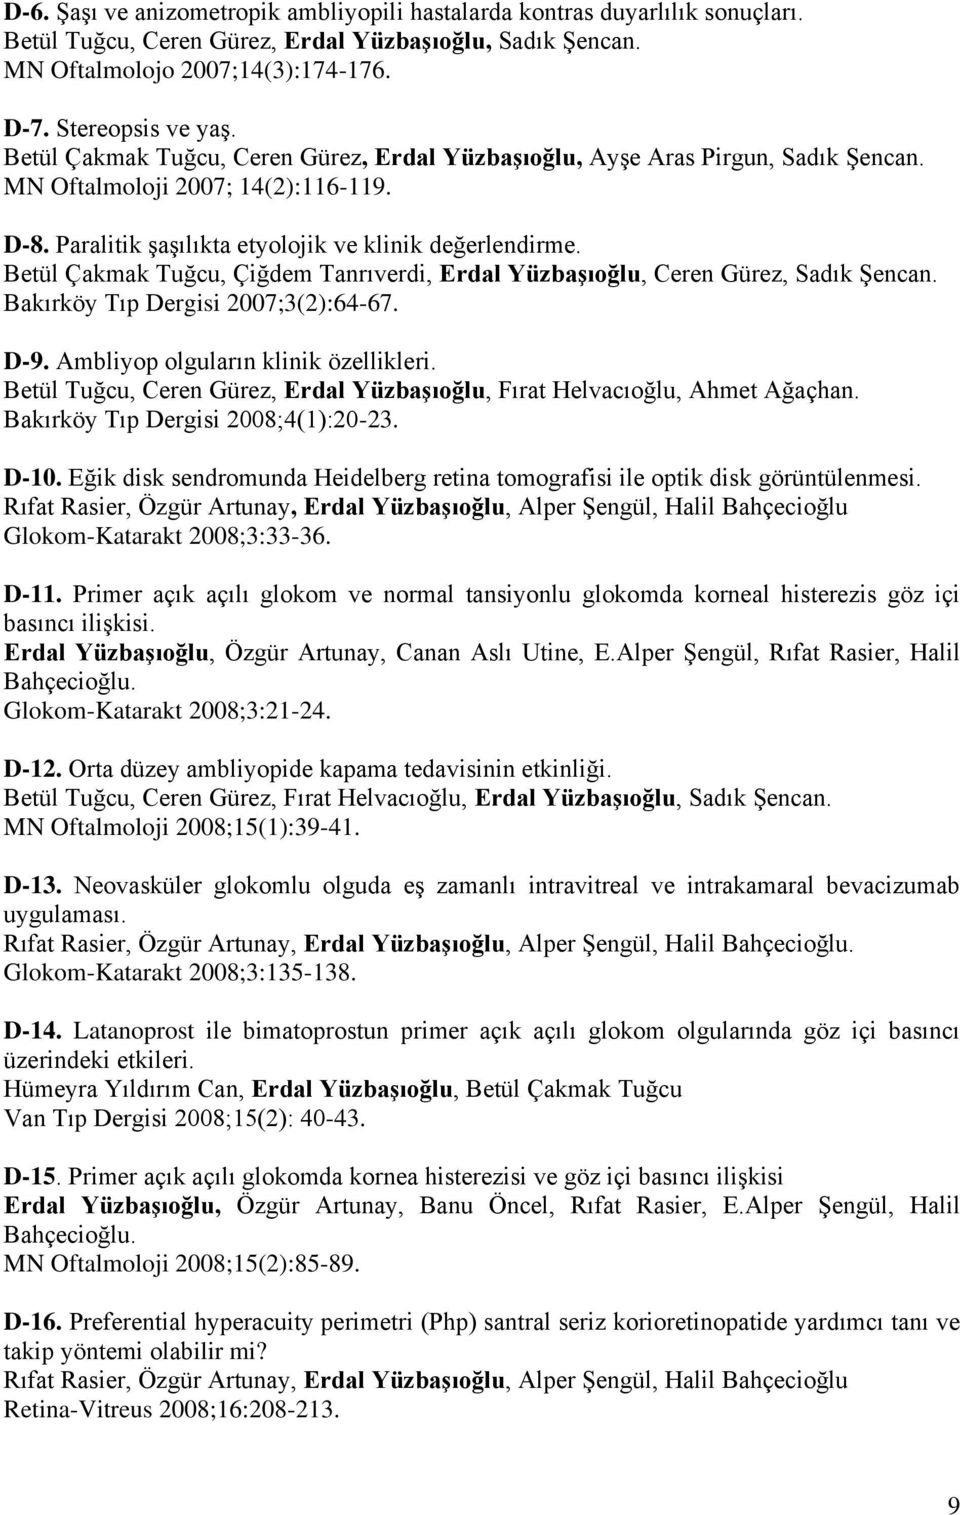 Betül Çakmak Tuğcu, Çiğdem Tanrıverdi, Erdal Yüzbaşıoğlu, Ceren Gürez, Sadık Şencan. Bakırköy Tıp Dergisi 2007;3(2):64-67. D-9. Ambliyop olguların klinik özellikleri.